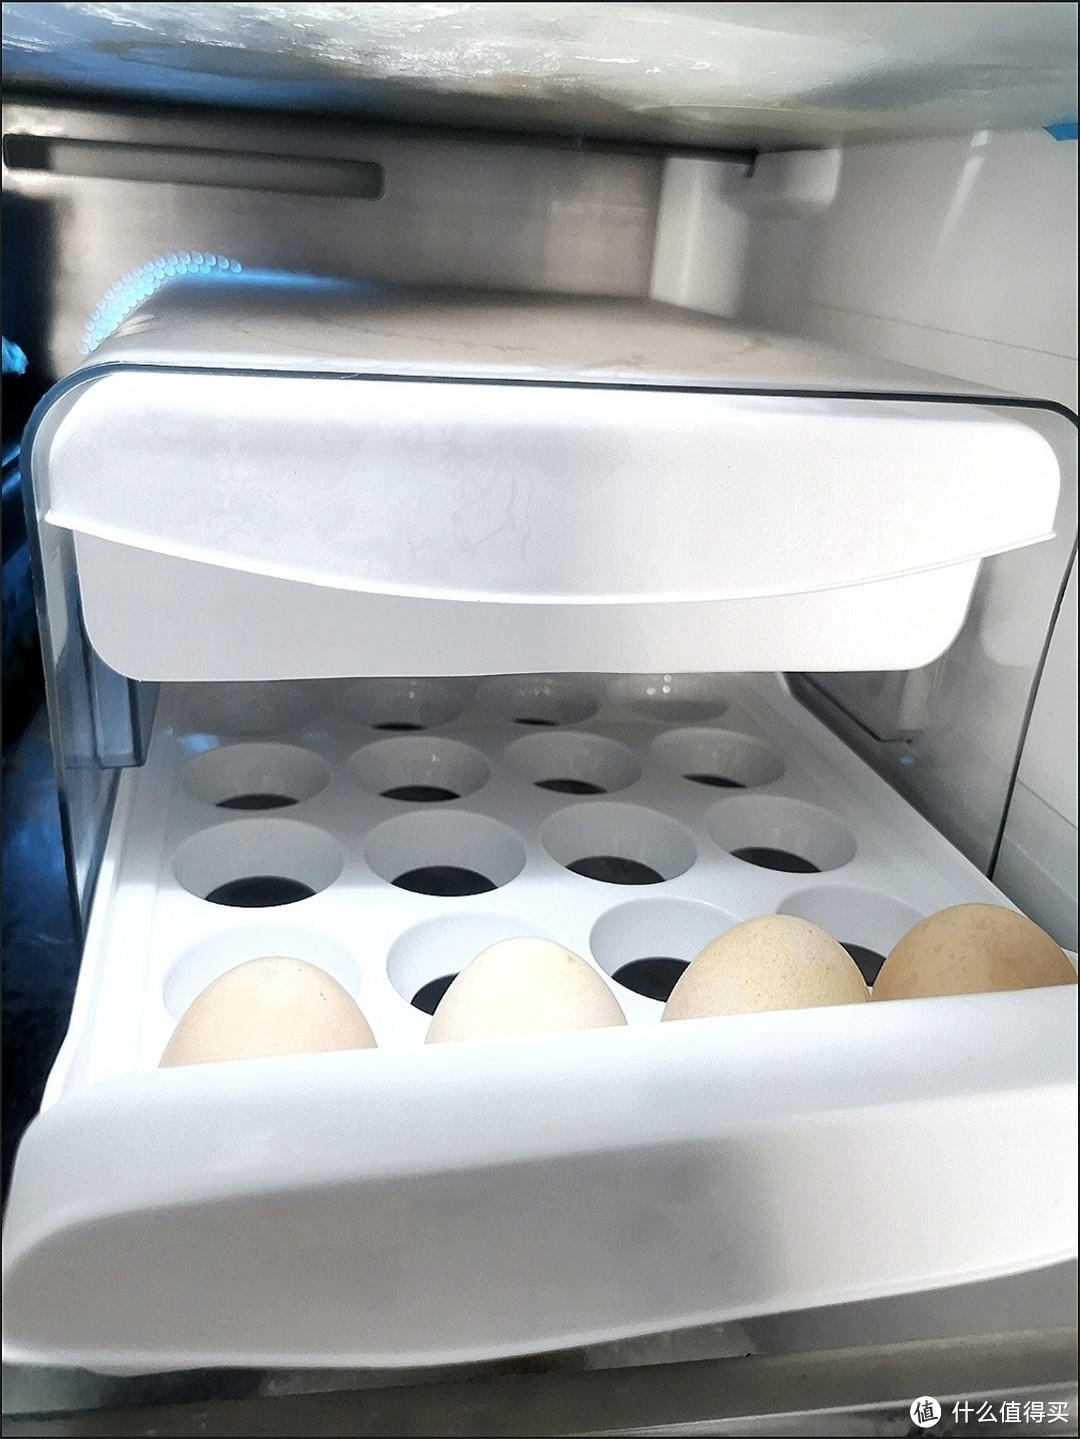 鸡蛋冰箱收纳